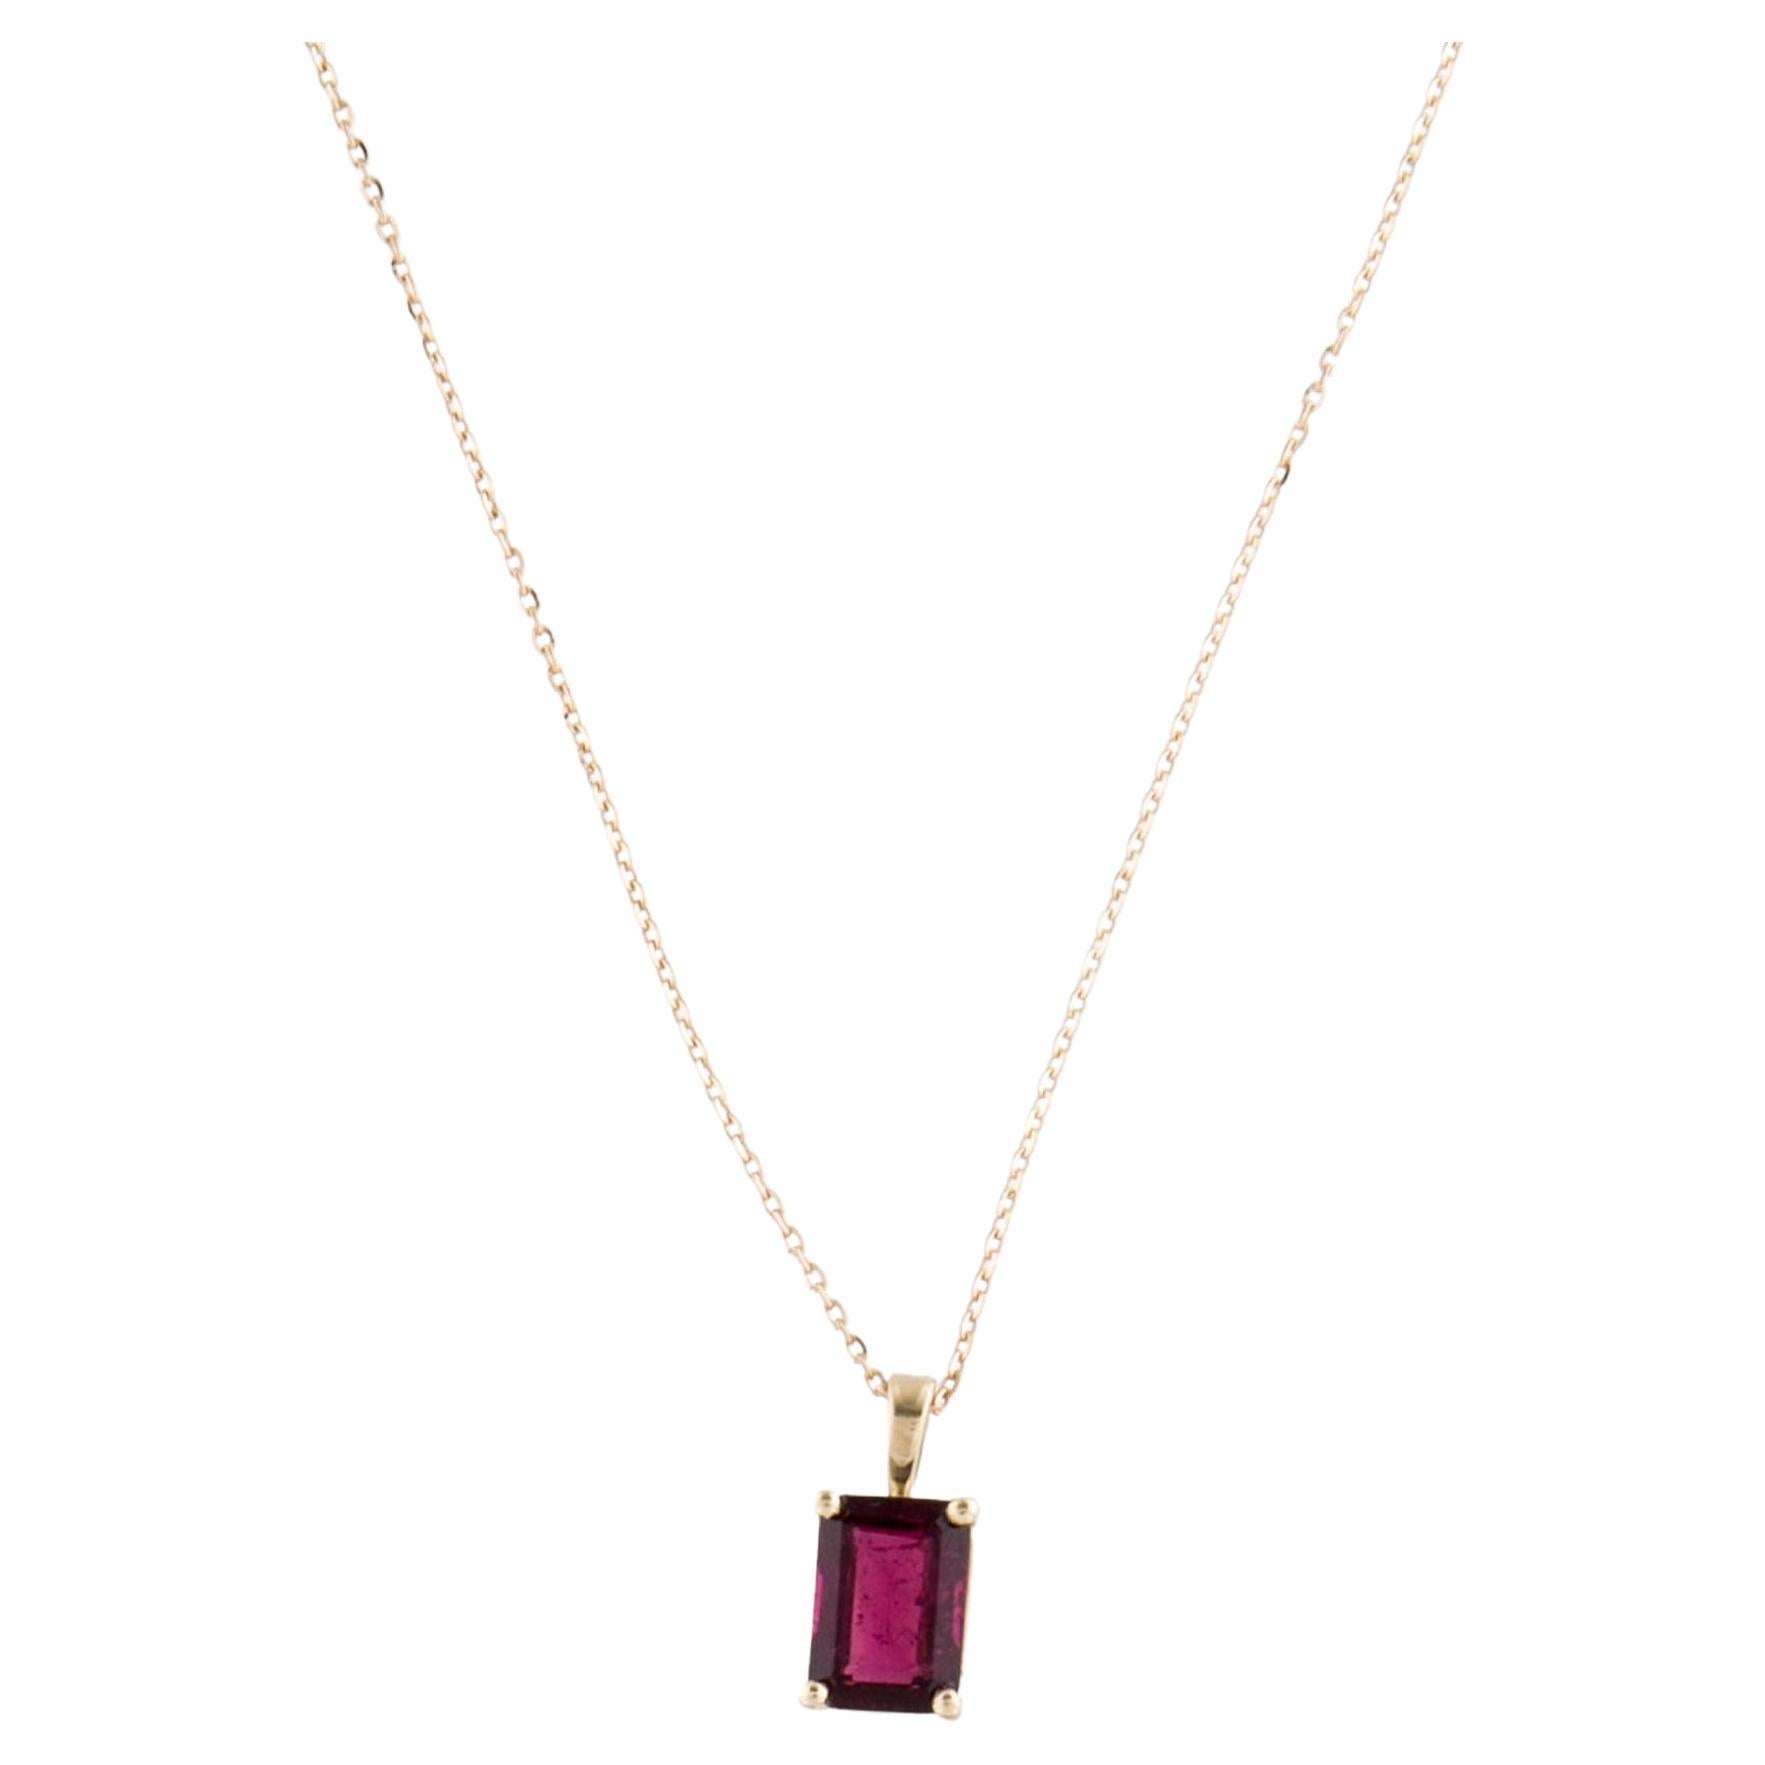 Élégant collier pendentif en or jaune 14 carats avec tourmaline rose, 1,49 carat